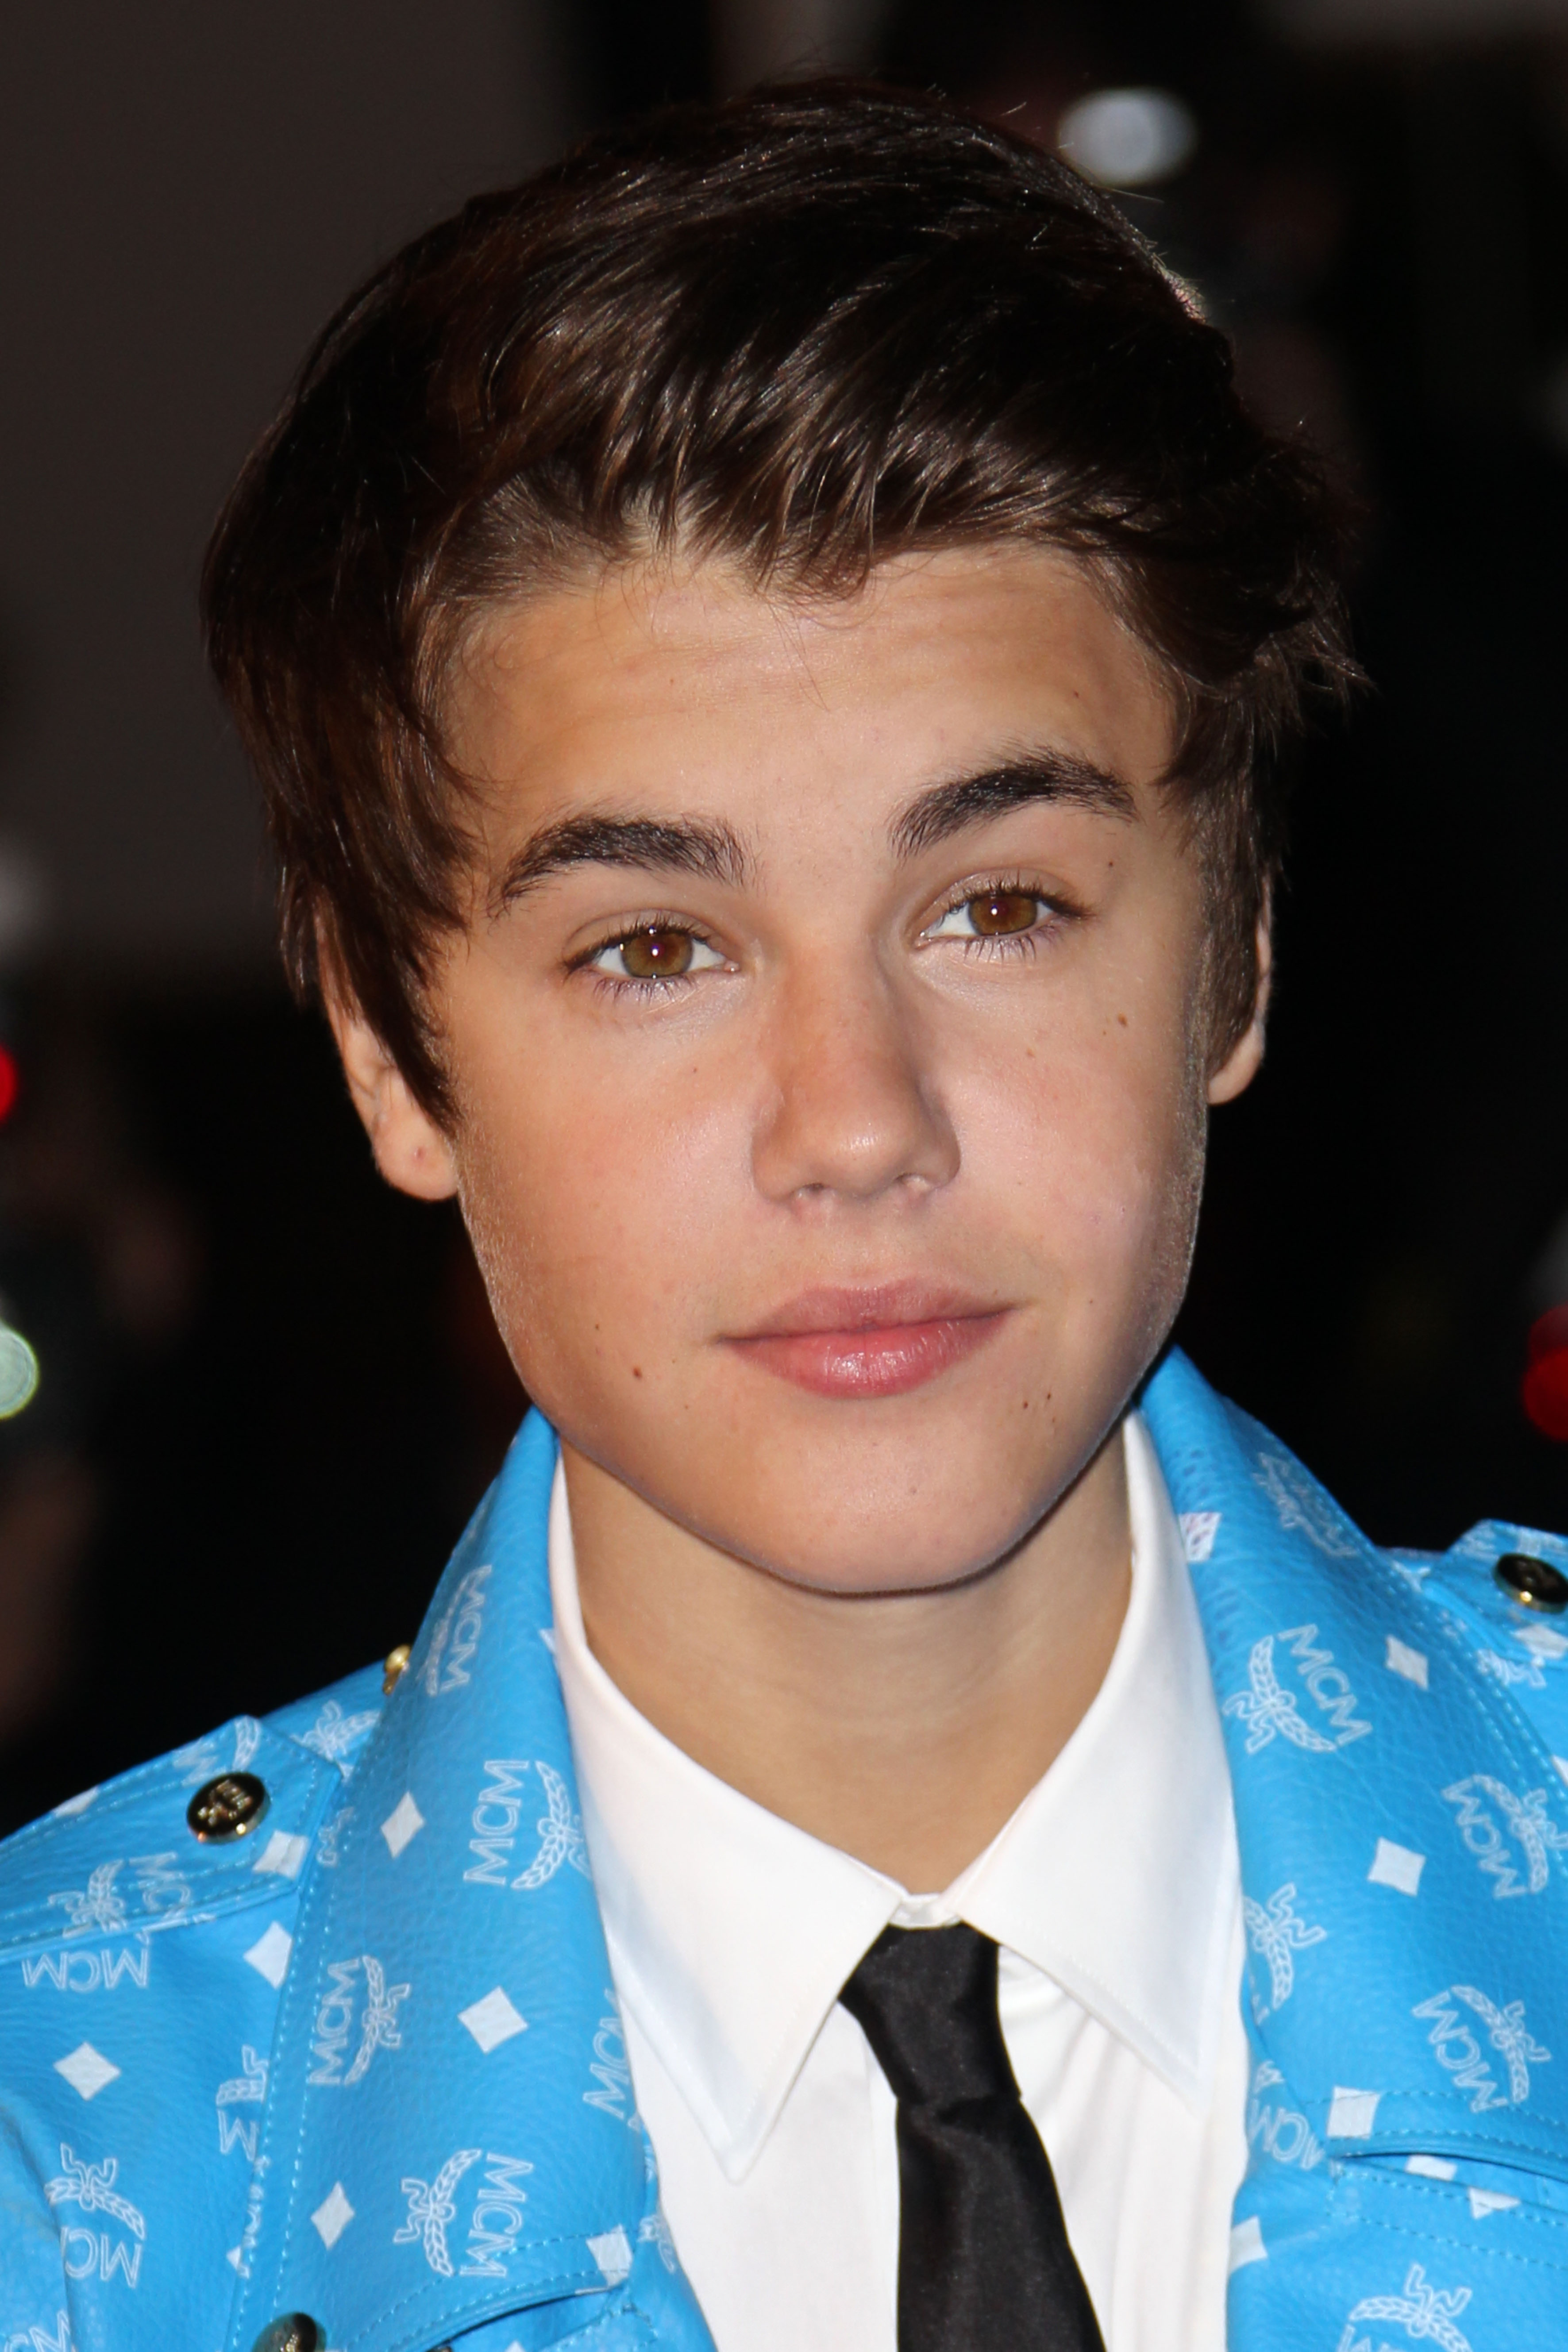 Justin Bieber lors des NRJ Music Awards au Palais des Festivals de Cannes, France, le 28 janvier 2012 | Source : Getty Images